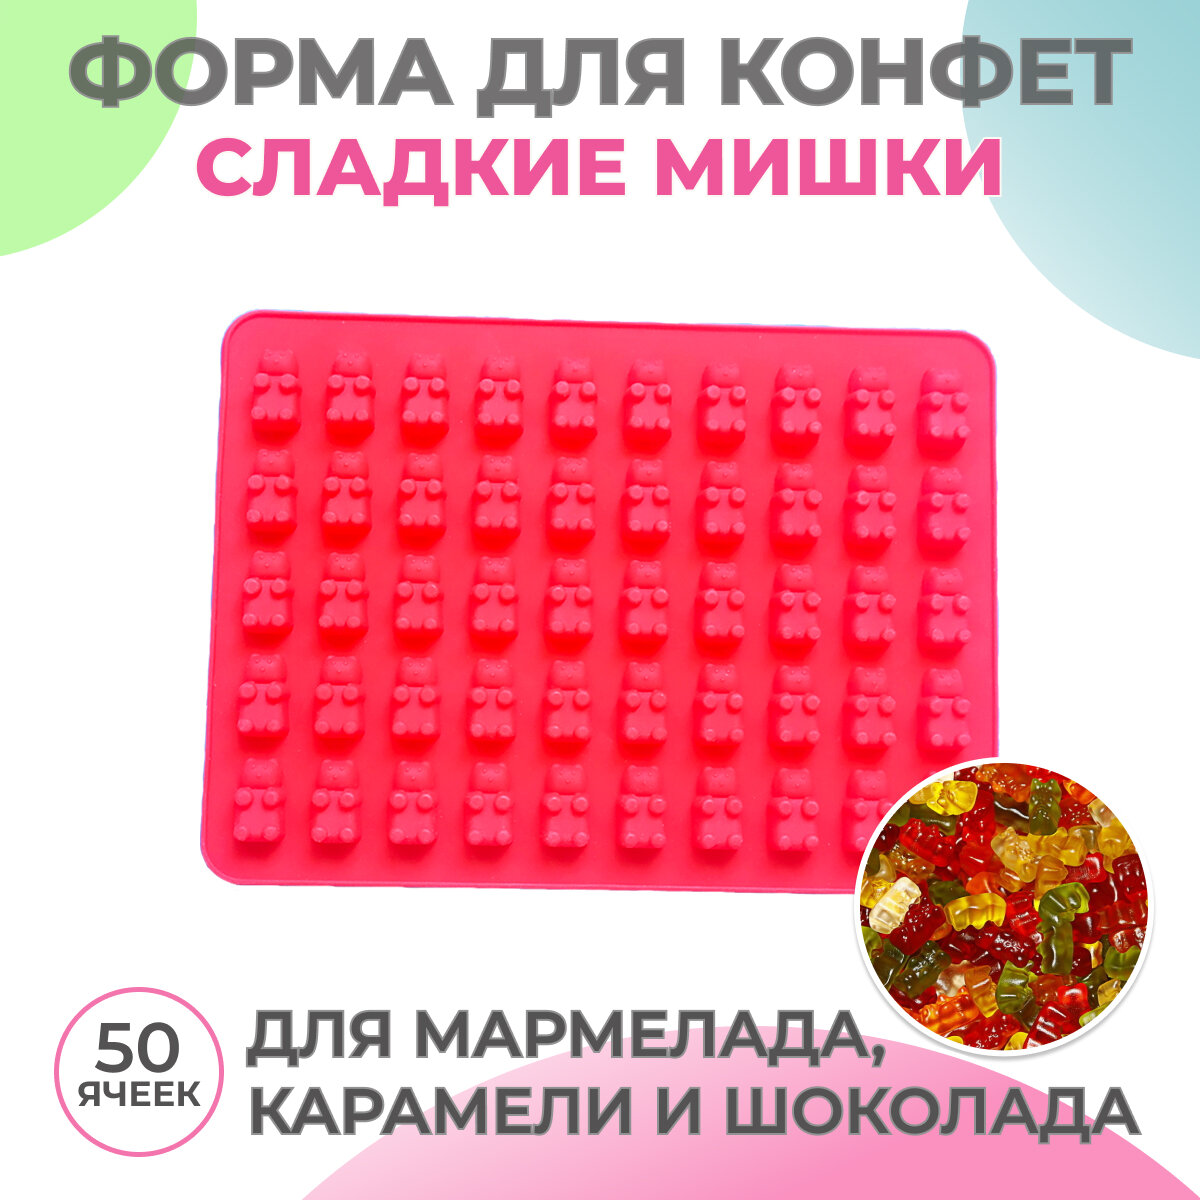 Силиконовая форма для конфет Сладкие Мишки, формочки для приготовления десерта, для мармелада карамели шоколада или льда, 18,5х13,5 см, 1 шт - 50 яч, красная